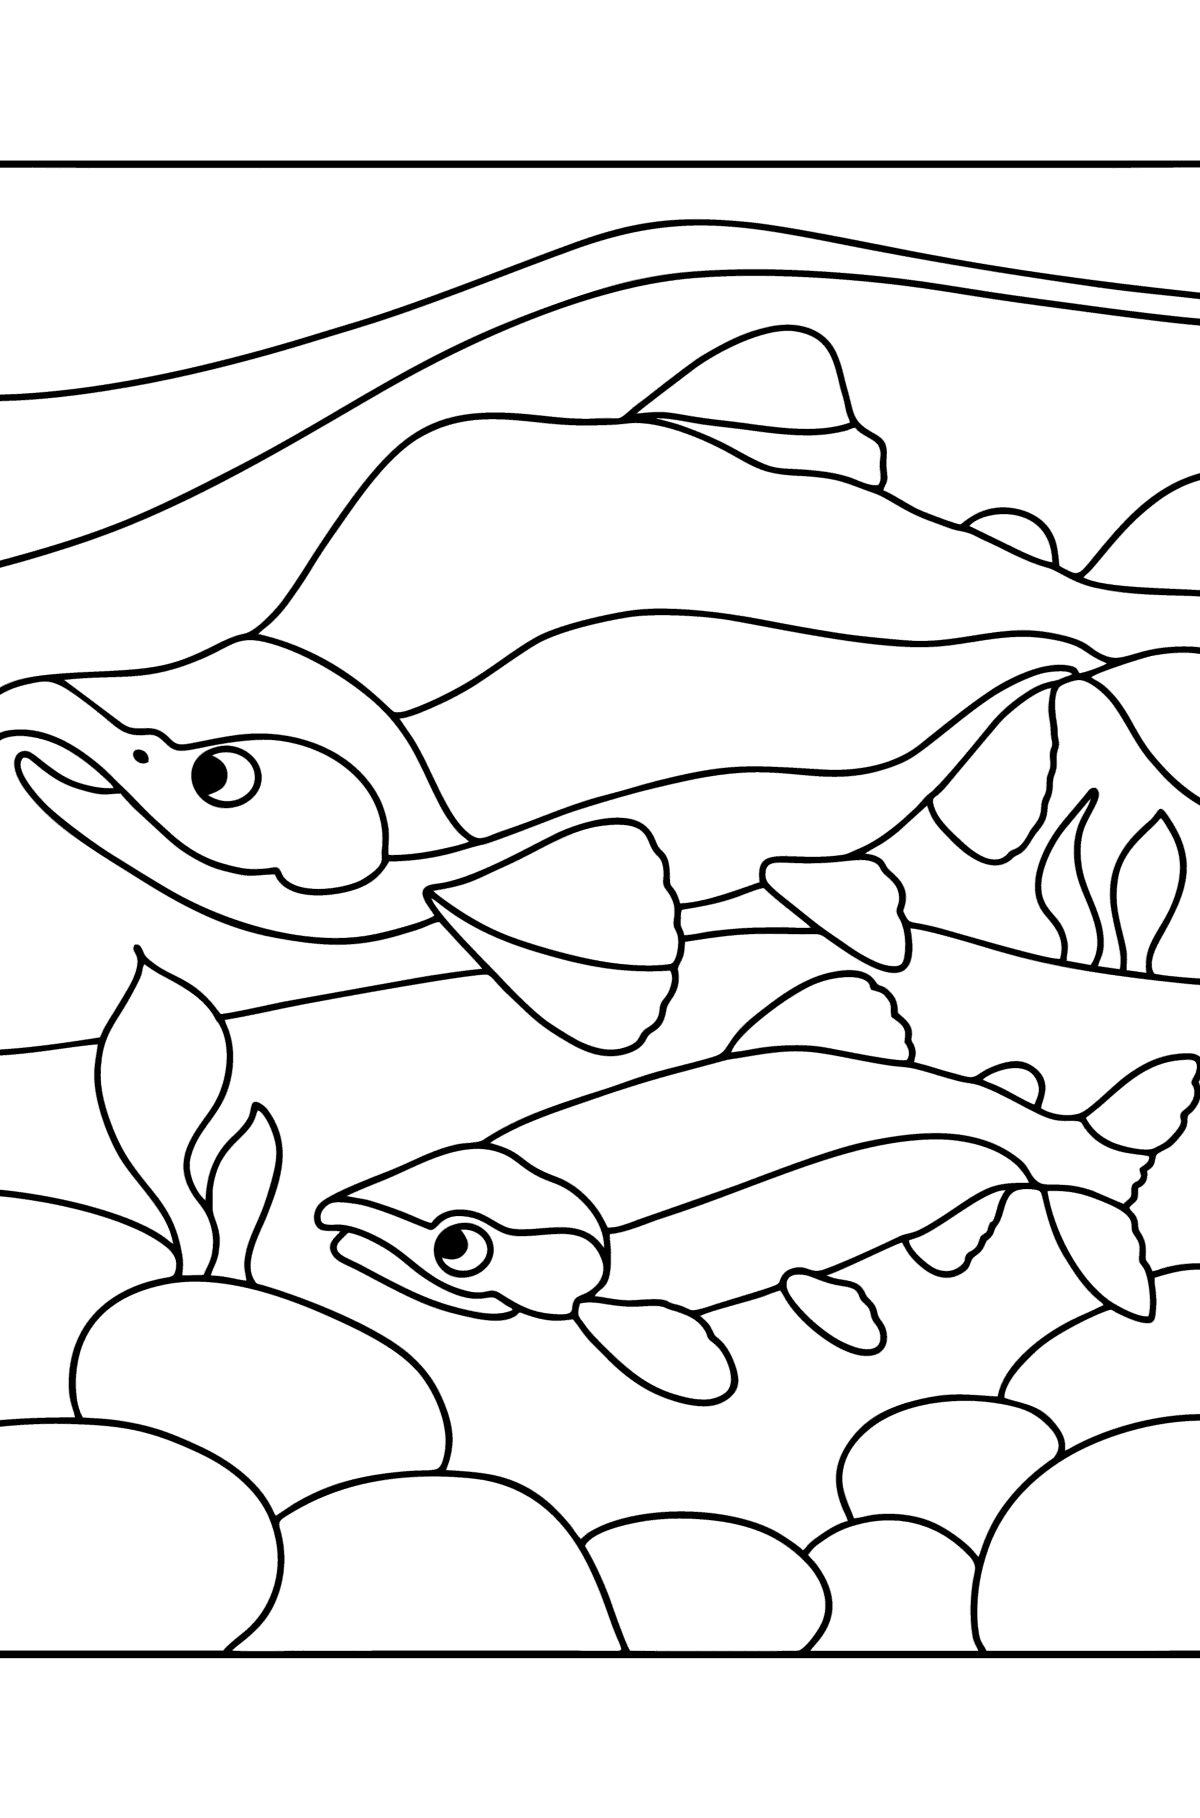 Disegno di Salmone rosso da colorare - Disegni da colorare per bambini